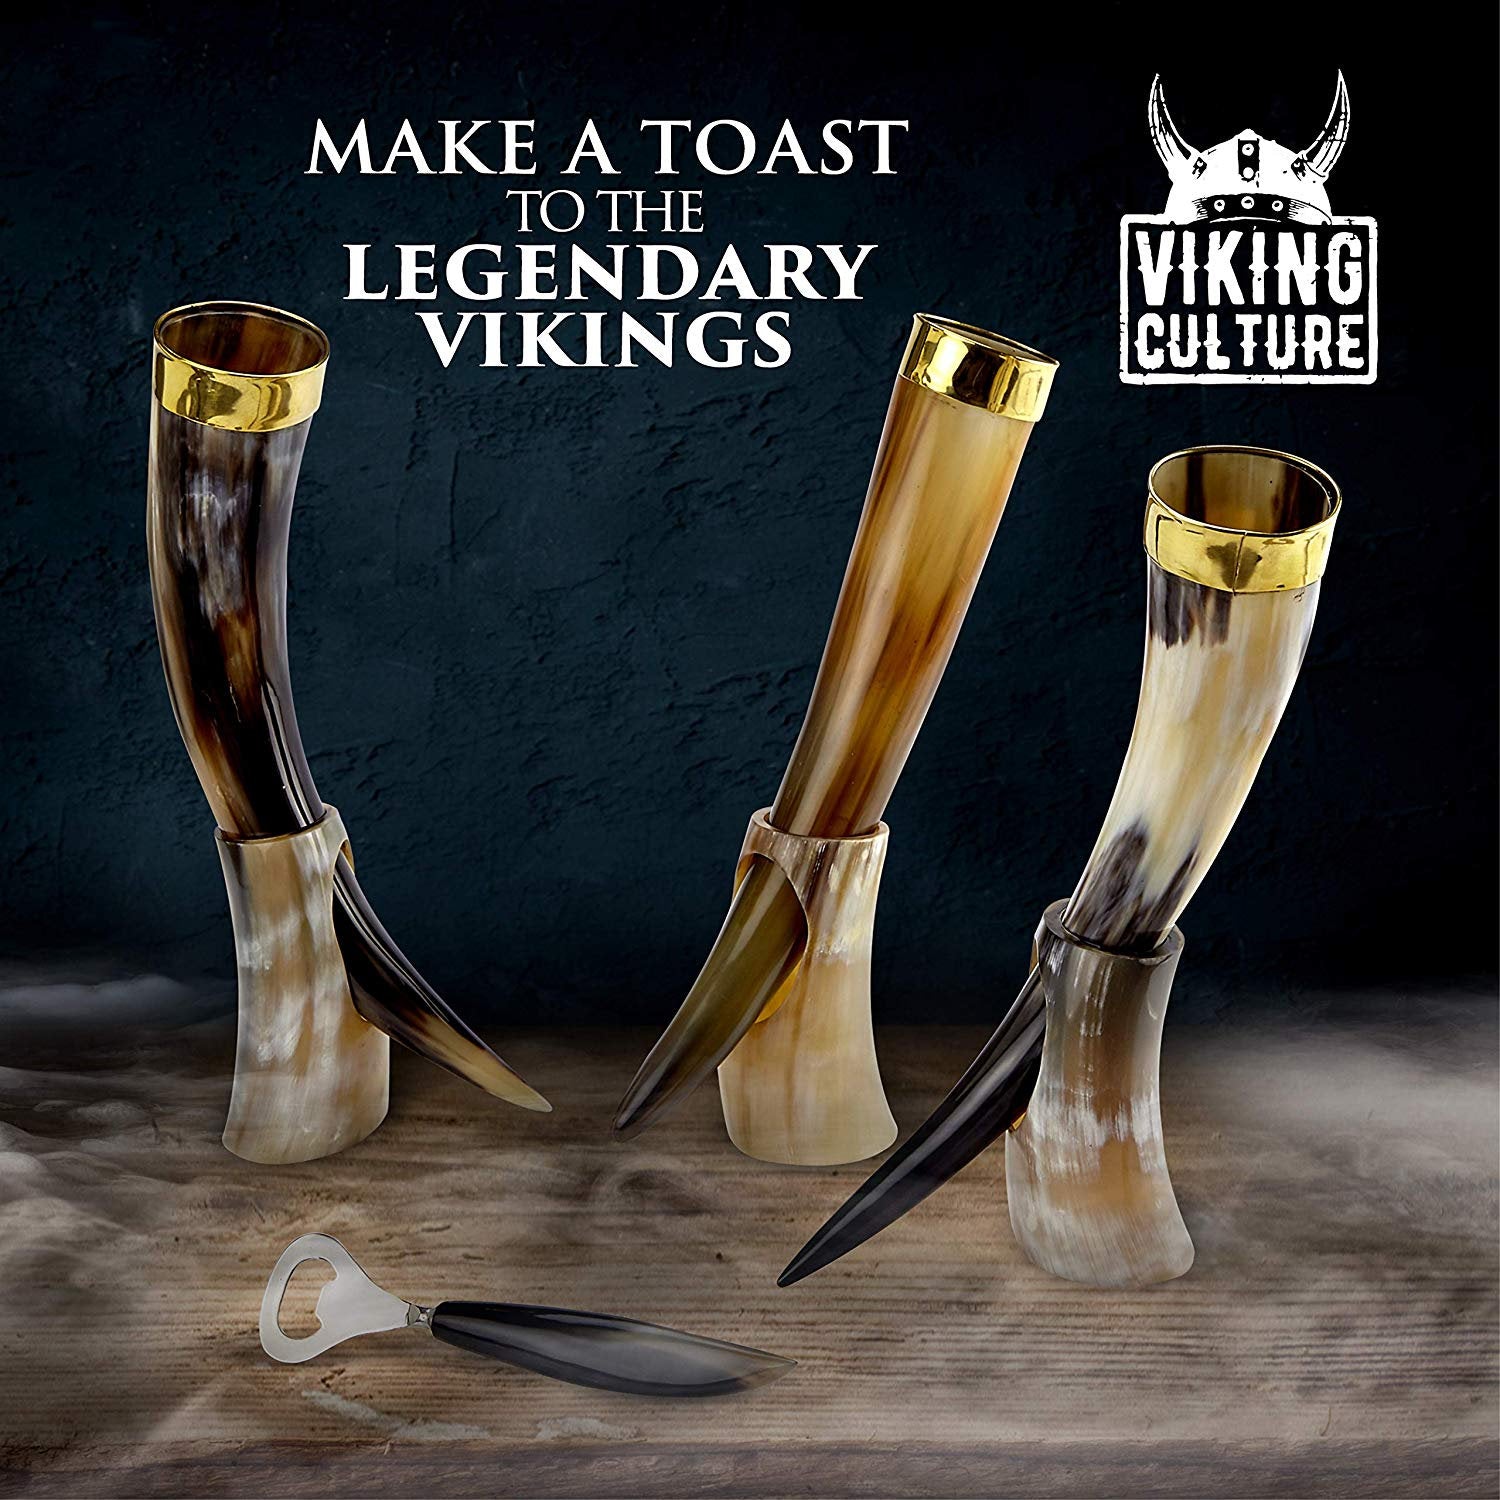 Viking Culture 16 oz. Viking Horn Mug with Beer Opener, Stand, Genuine Leather Belt Holster and Vintage Burlap Bag, Polished Finished